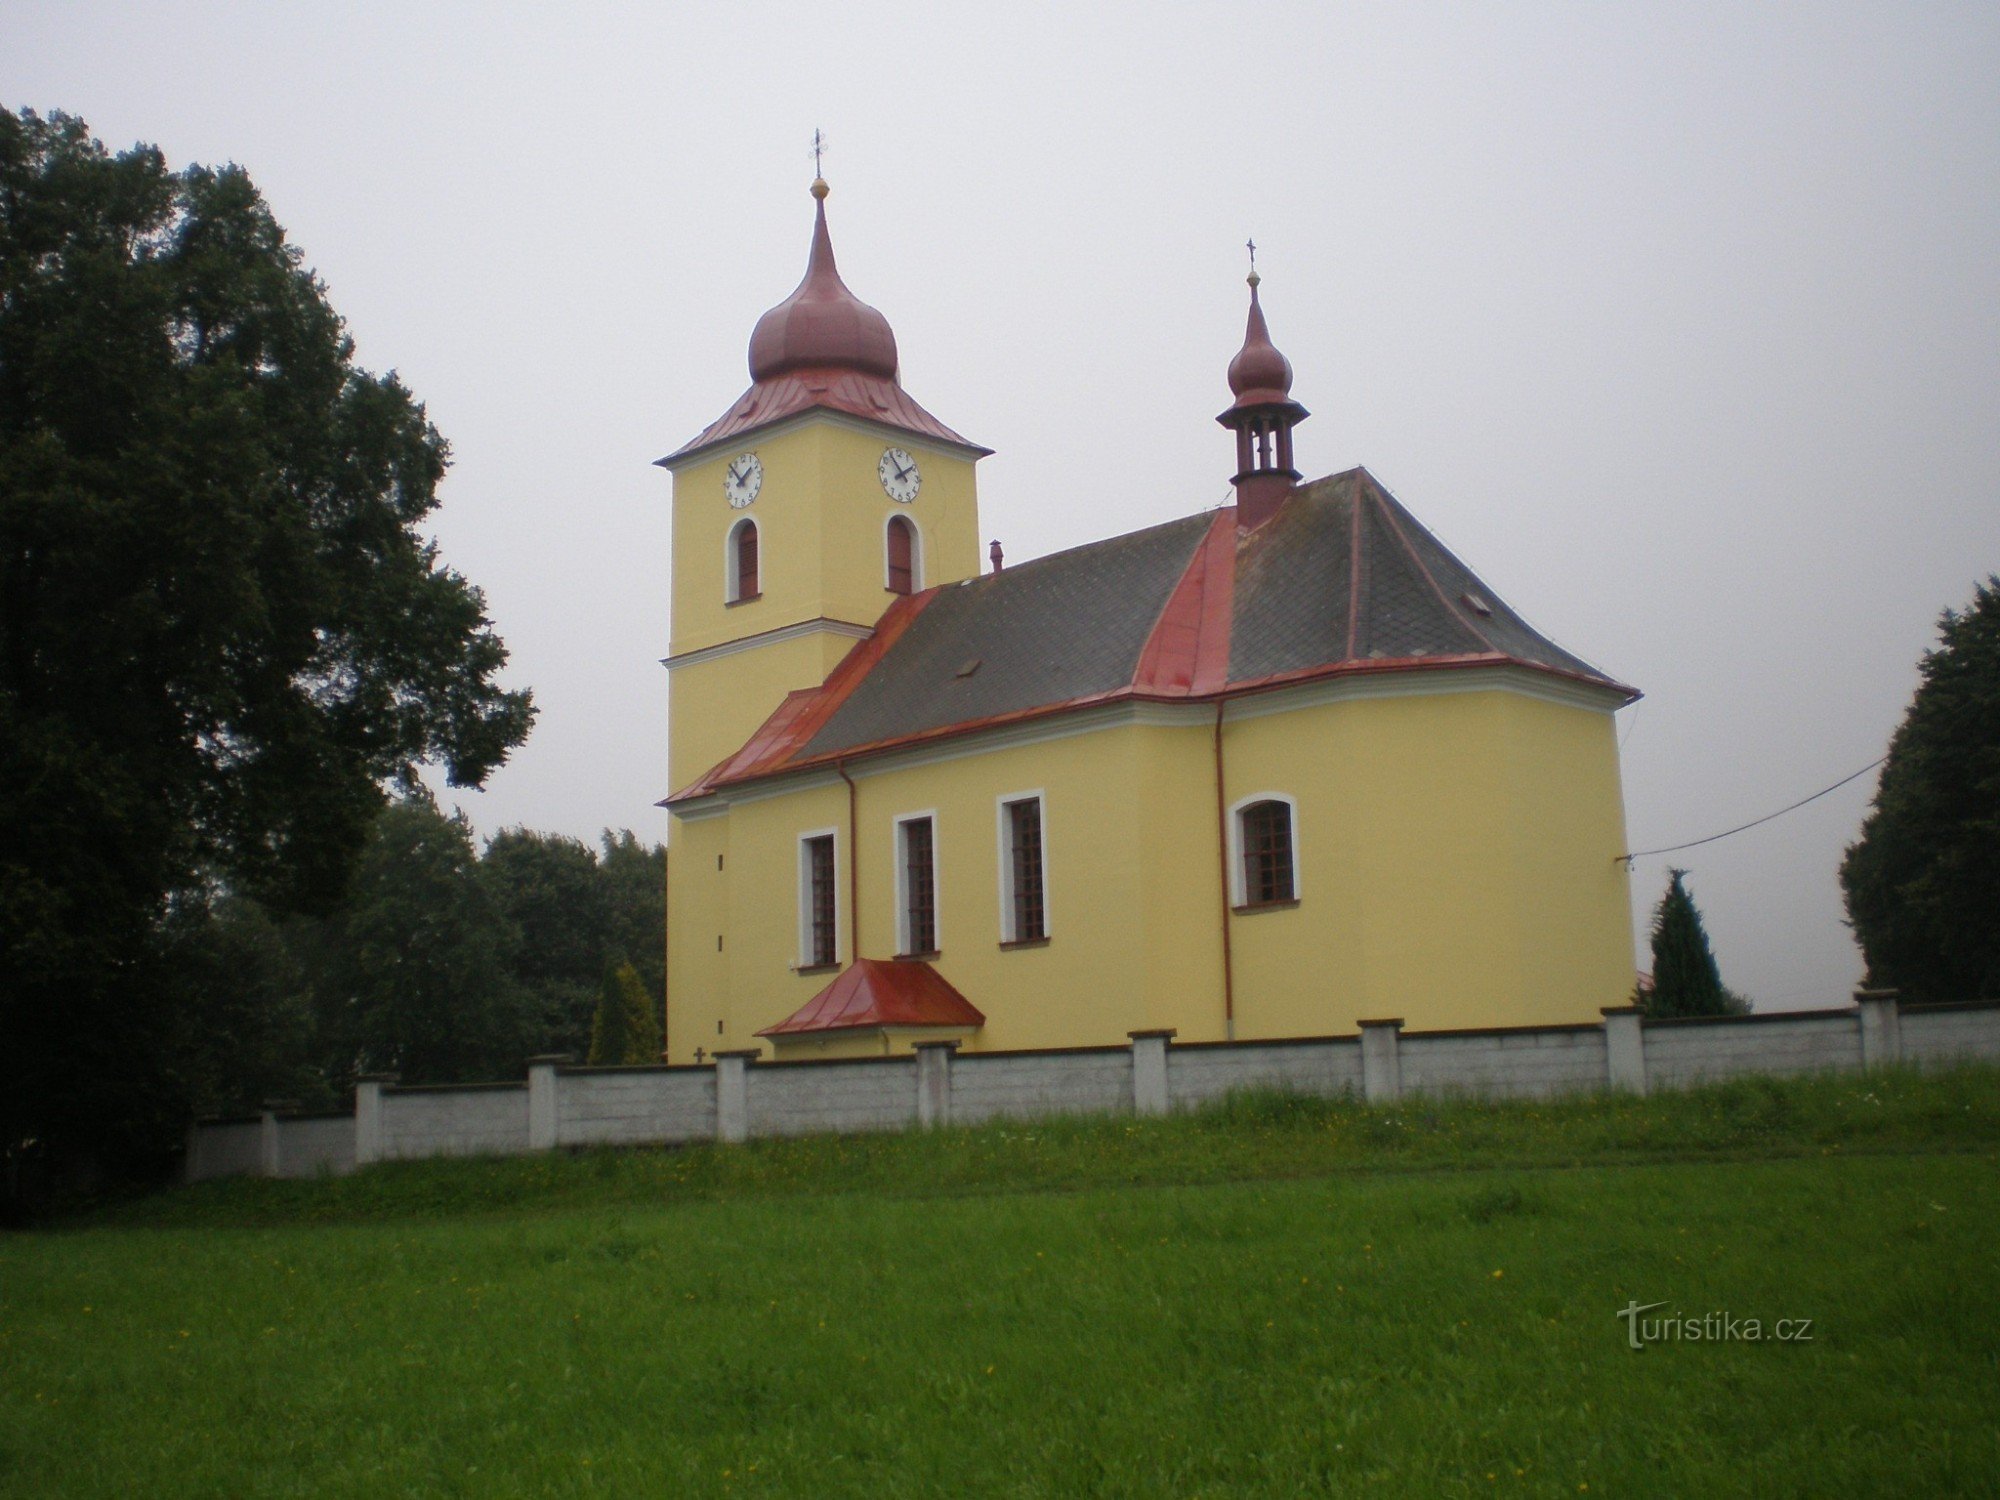 Vryprachtice - Nhà thờ Sự biến hình của Chúa